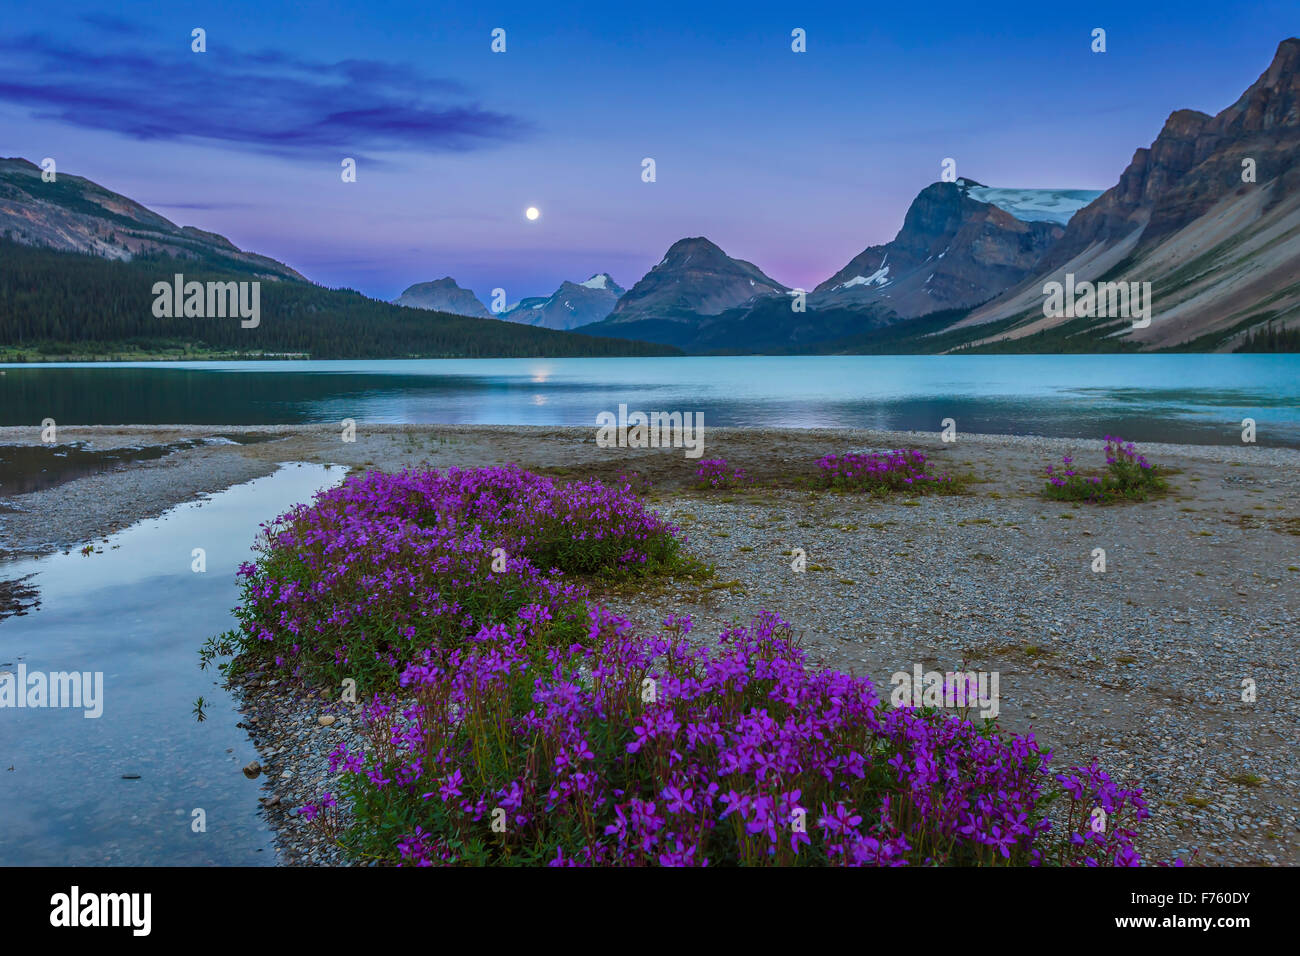 La luna quasi piena (0ne il giorno prima della completa) in aumento alla fine del lago di prua, con fiori viola (Viola Sassifraga?) in foregro Foto Stock